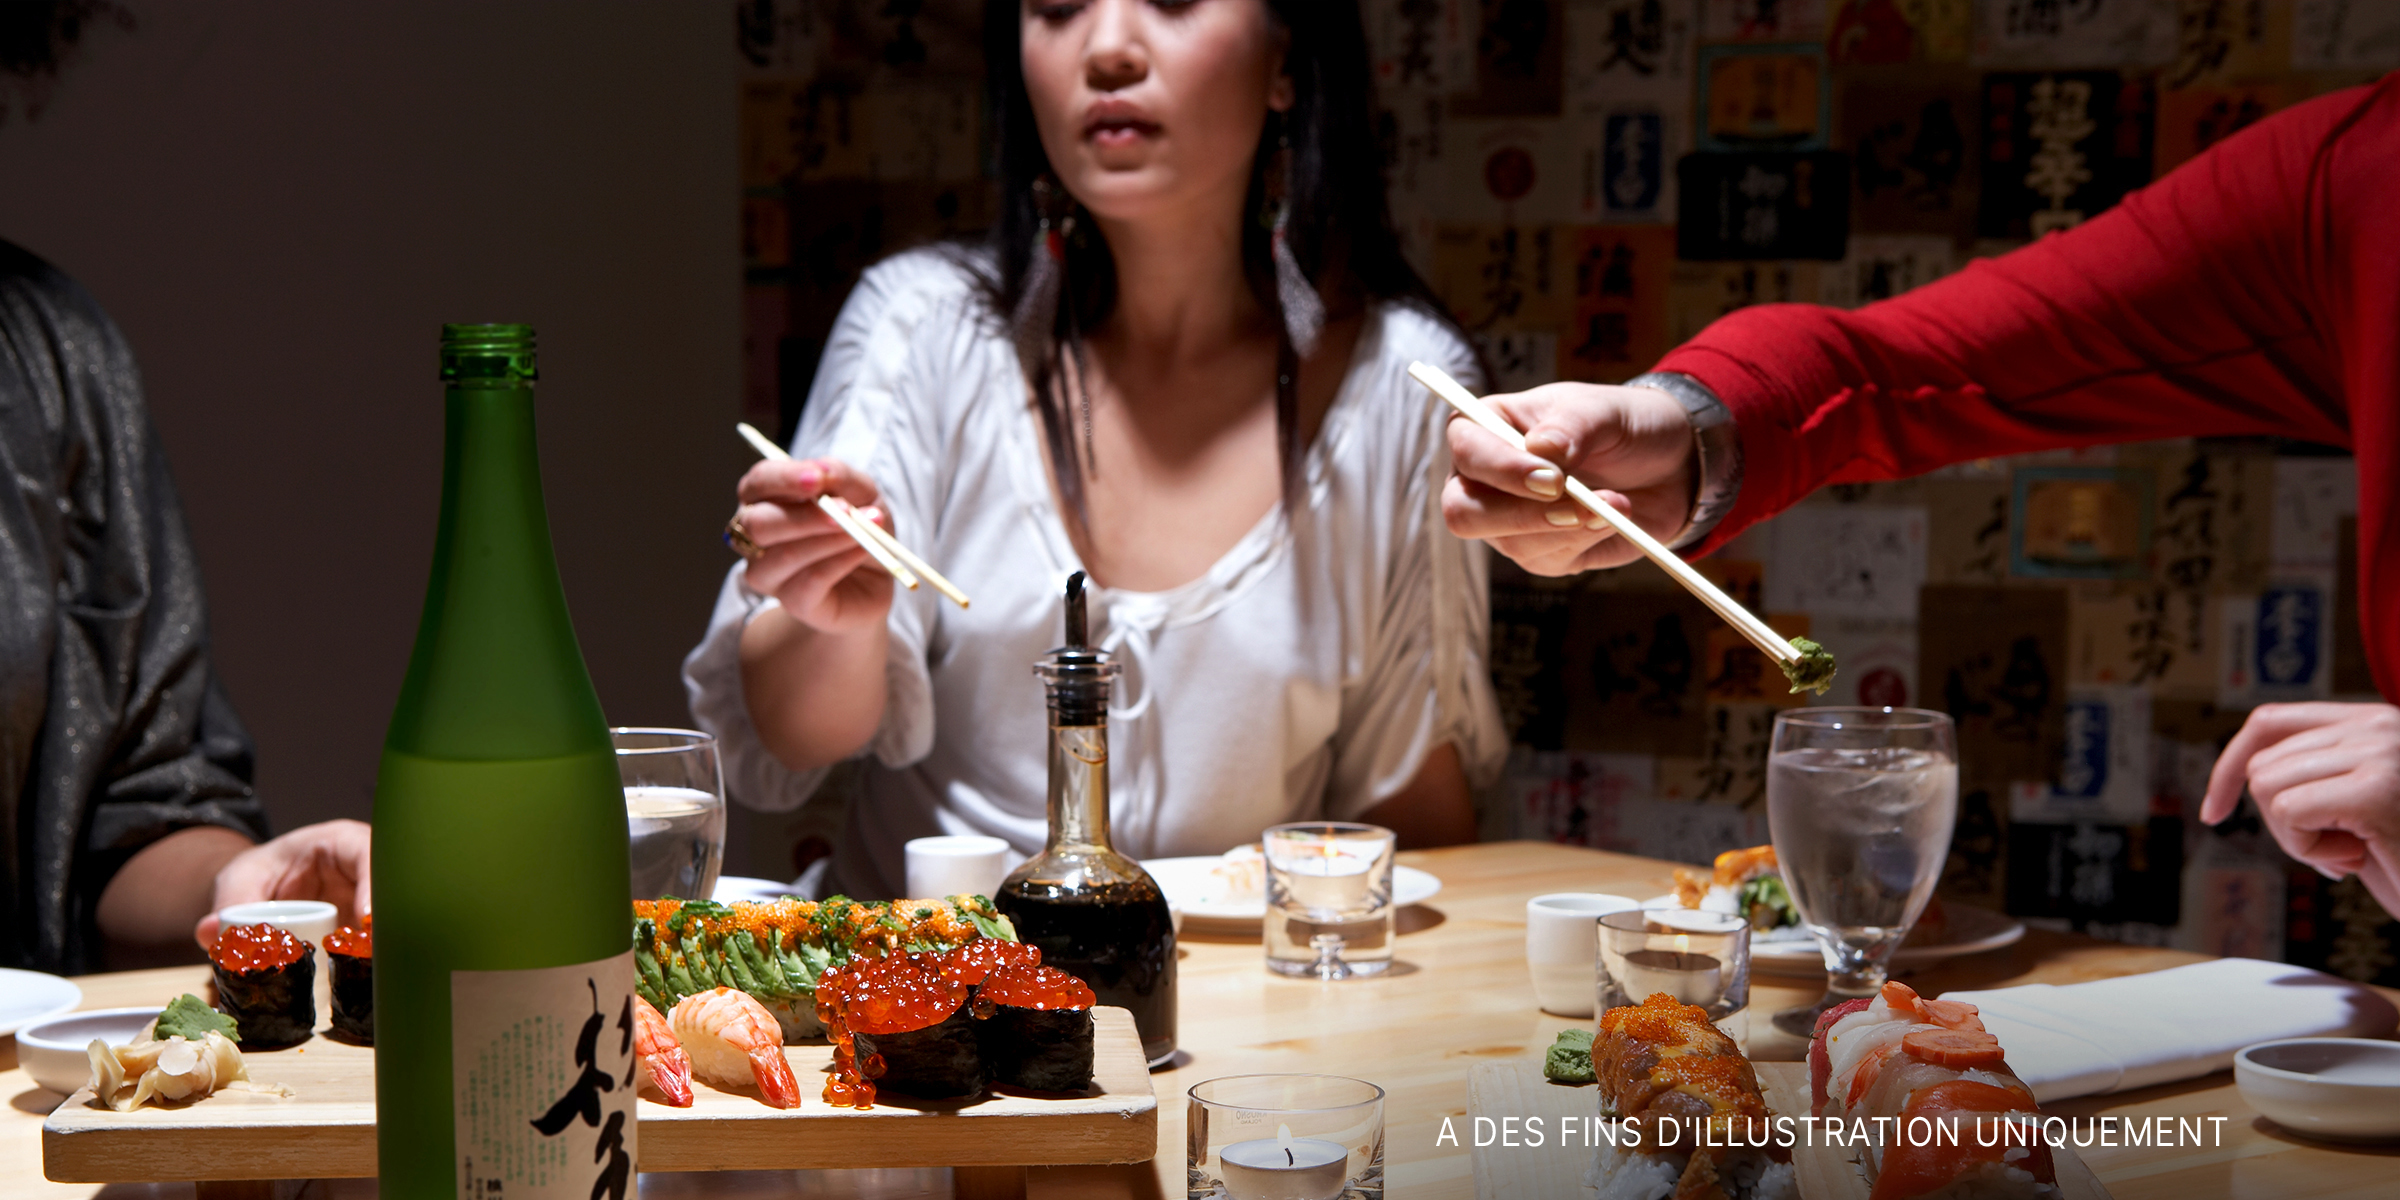 Des gens mangent des sushis dans un restaurant | Source : Shutterstock